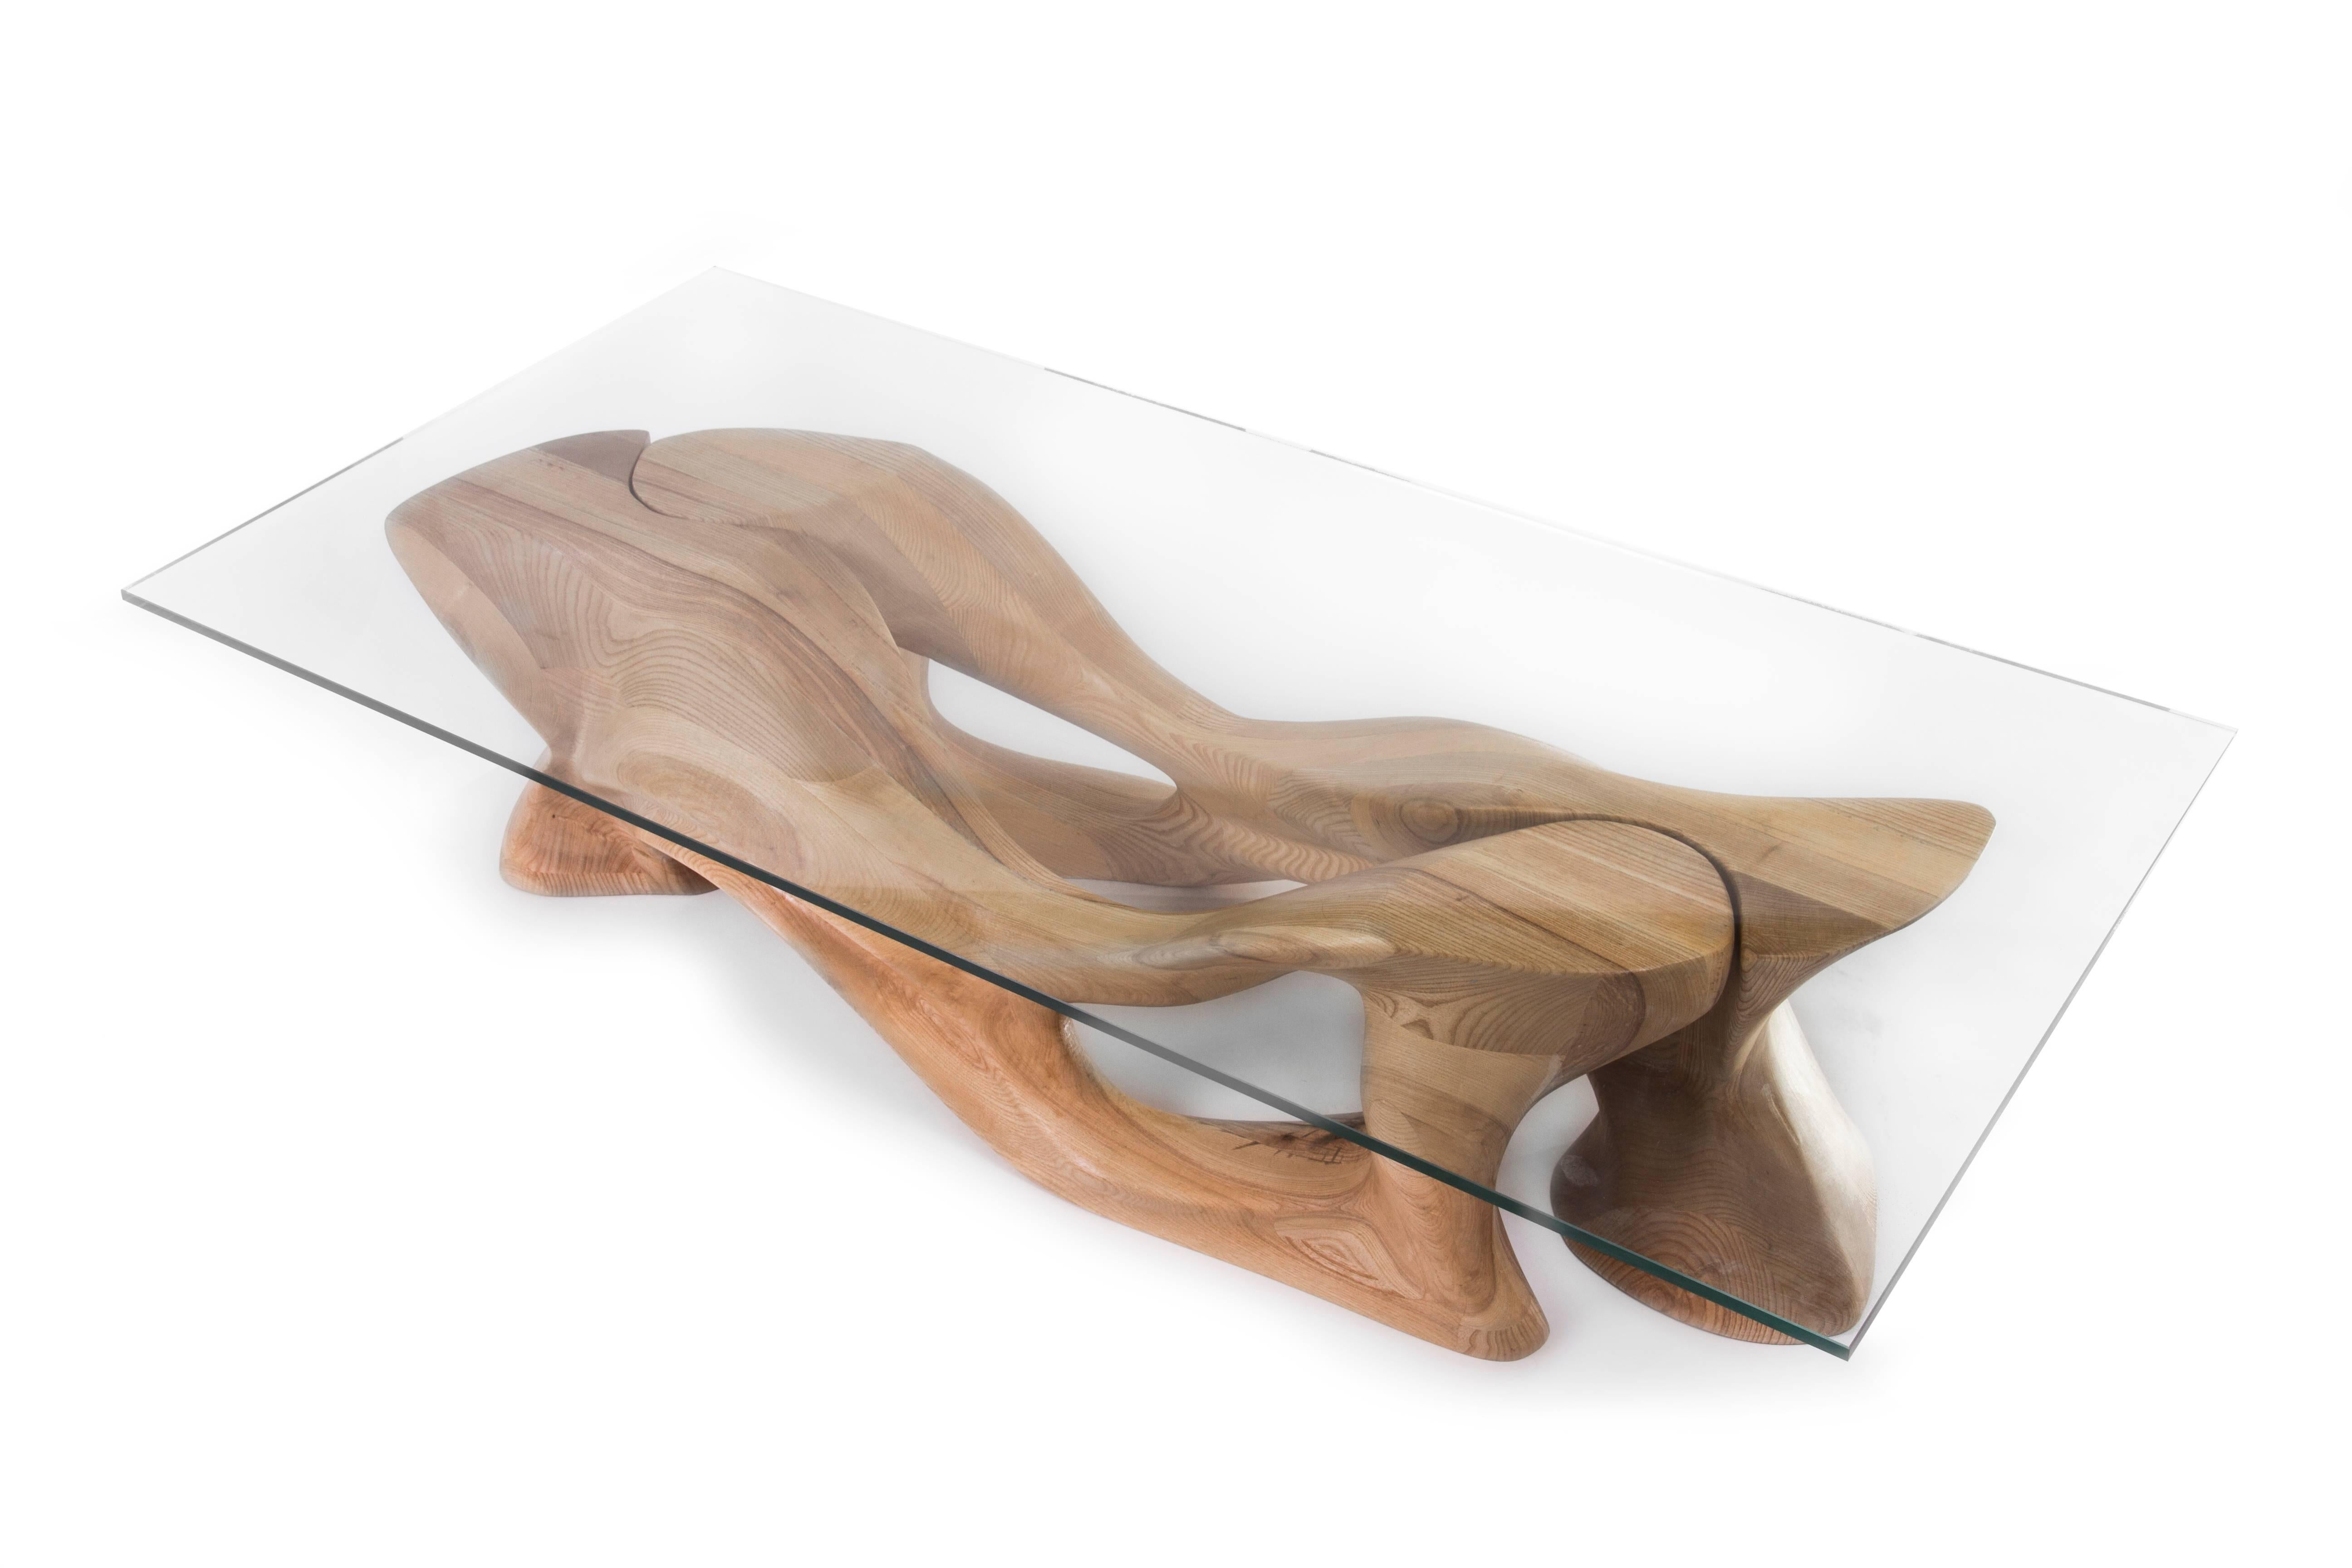 La table basse Crux est une table d'art sculpturale futuriste élégante avec une forme dynamique conçue et fabriquée par Amorph. La table Crux se compose de deux pièces identiques qui s'assemblent pour créer une forme élégante. La dimension de la